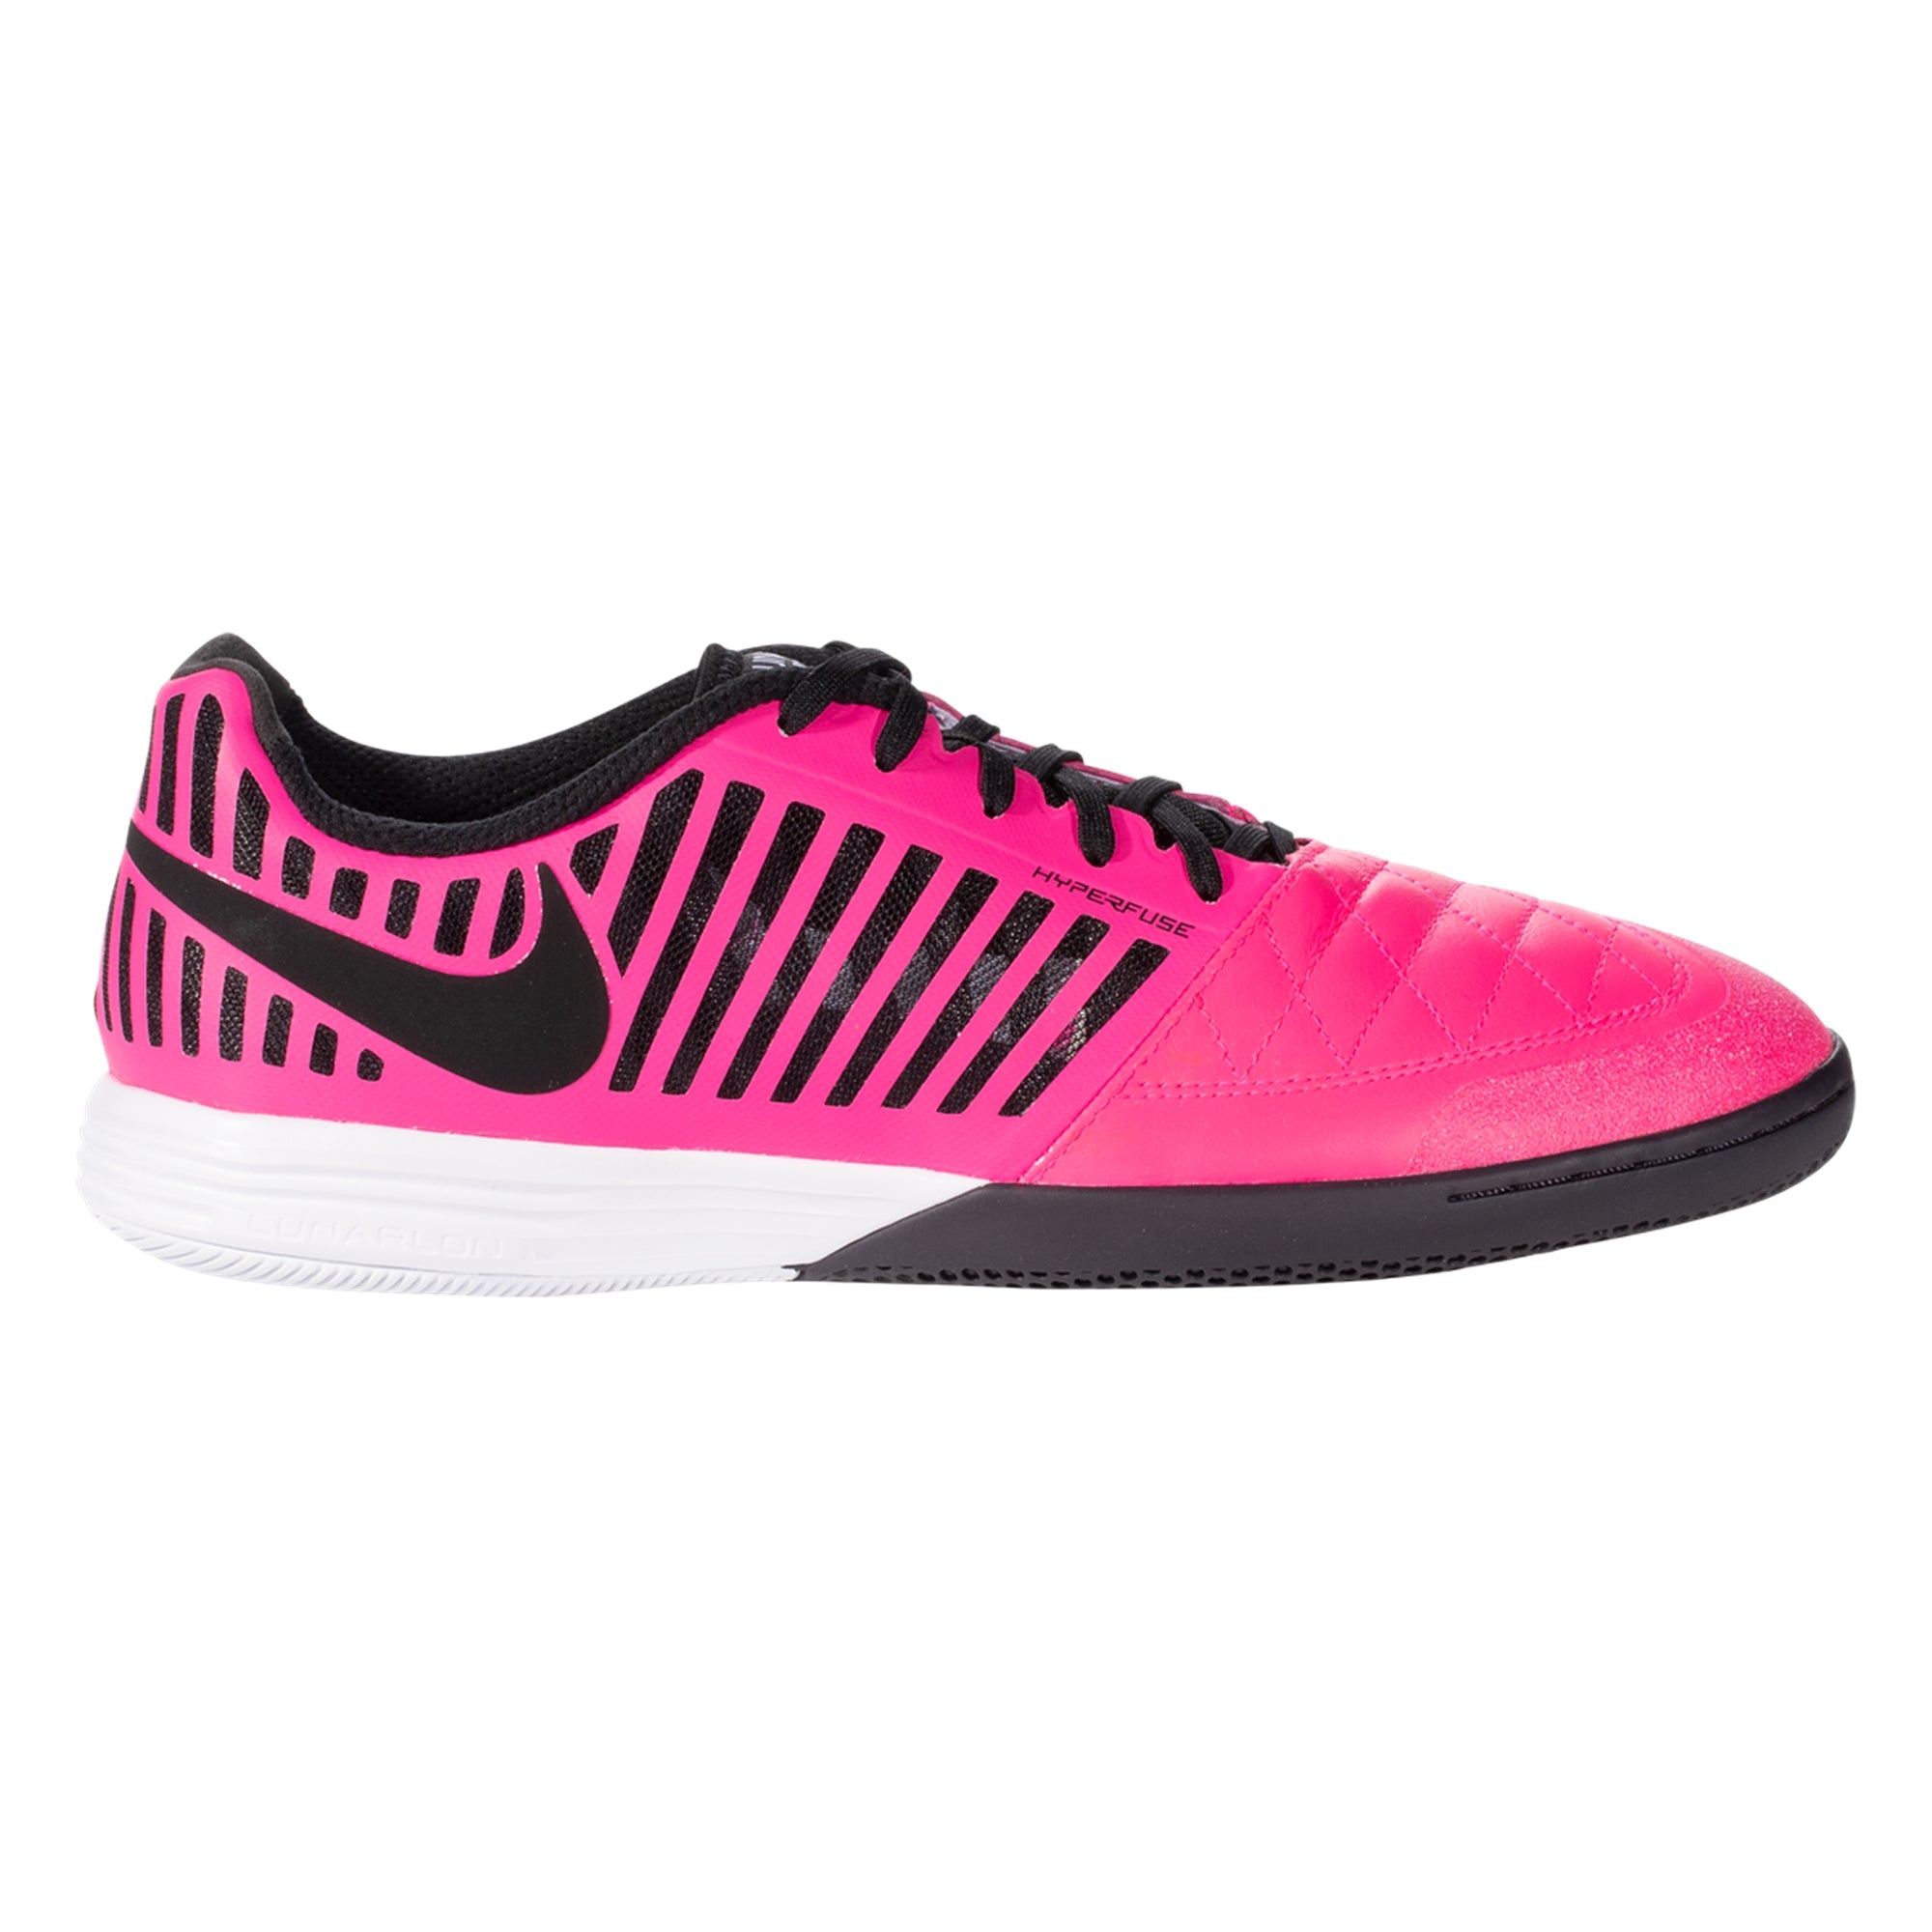 Beneden afronden Dislocatie Specimen Nike Lunargato II Indoor Soccer Shoes- PinkBlast/Black/CavePurple  580456-605 – Soccer Zone USA